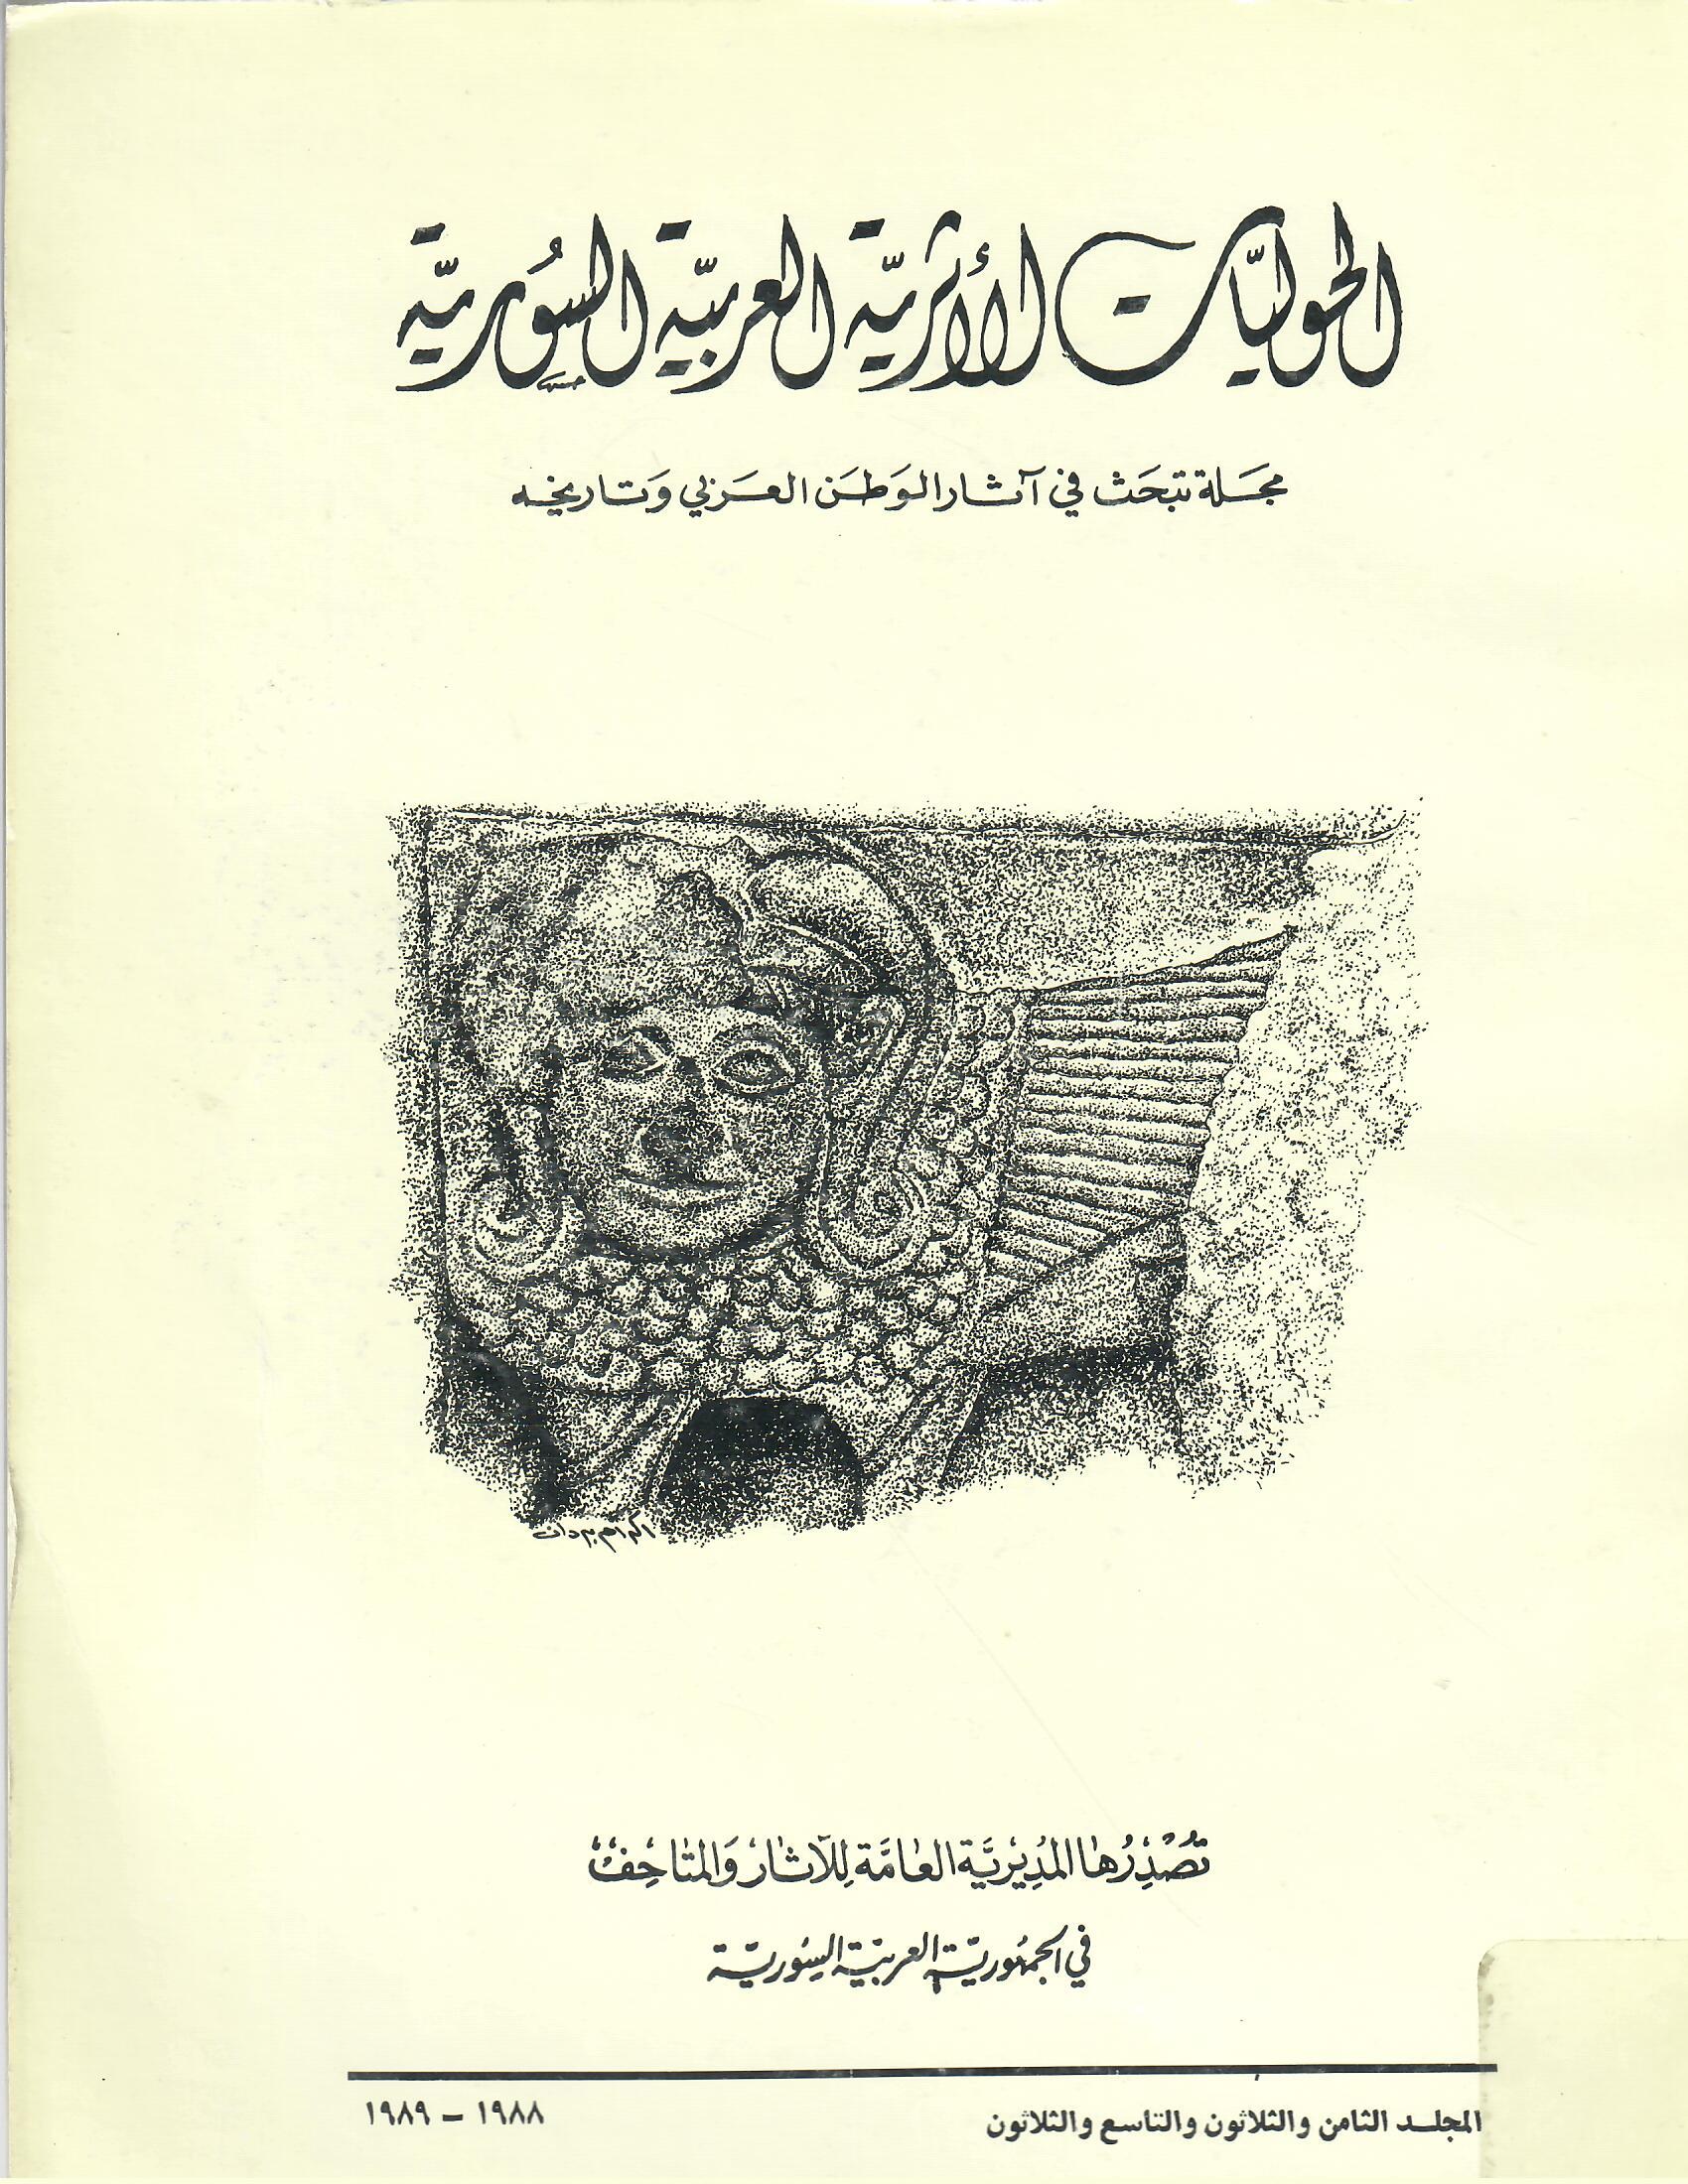 الحوليات الأثرية العربية السورية المجلد الثامن والثلاثون والتاسع والثلاثون